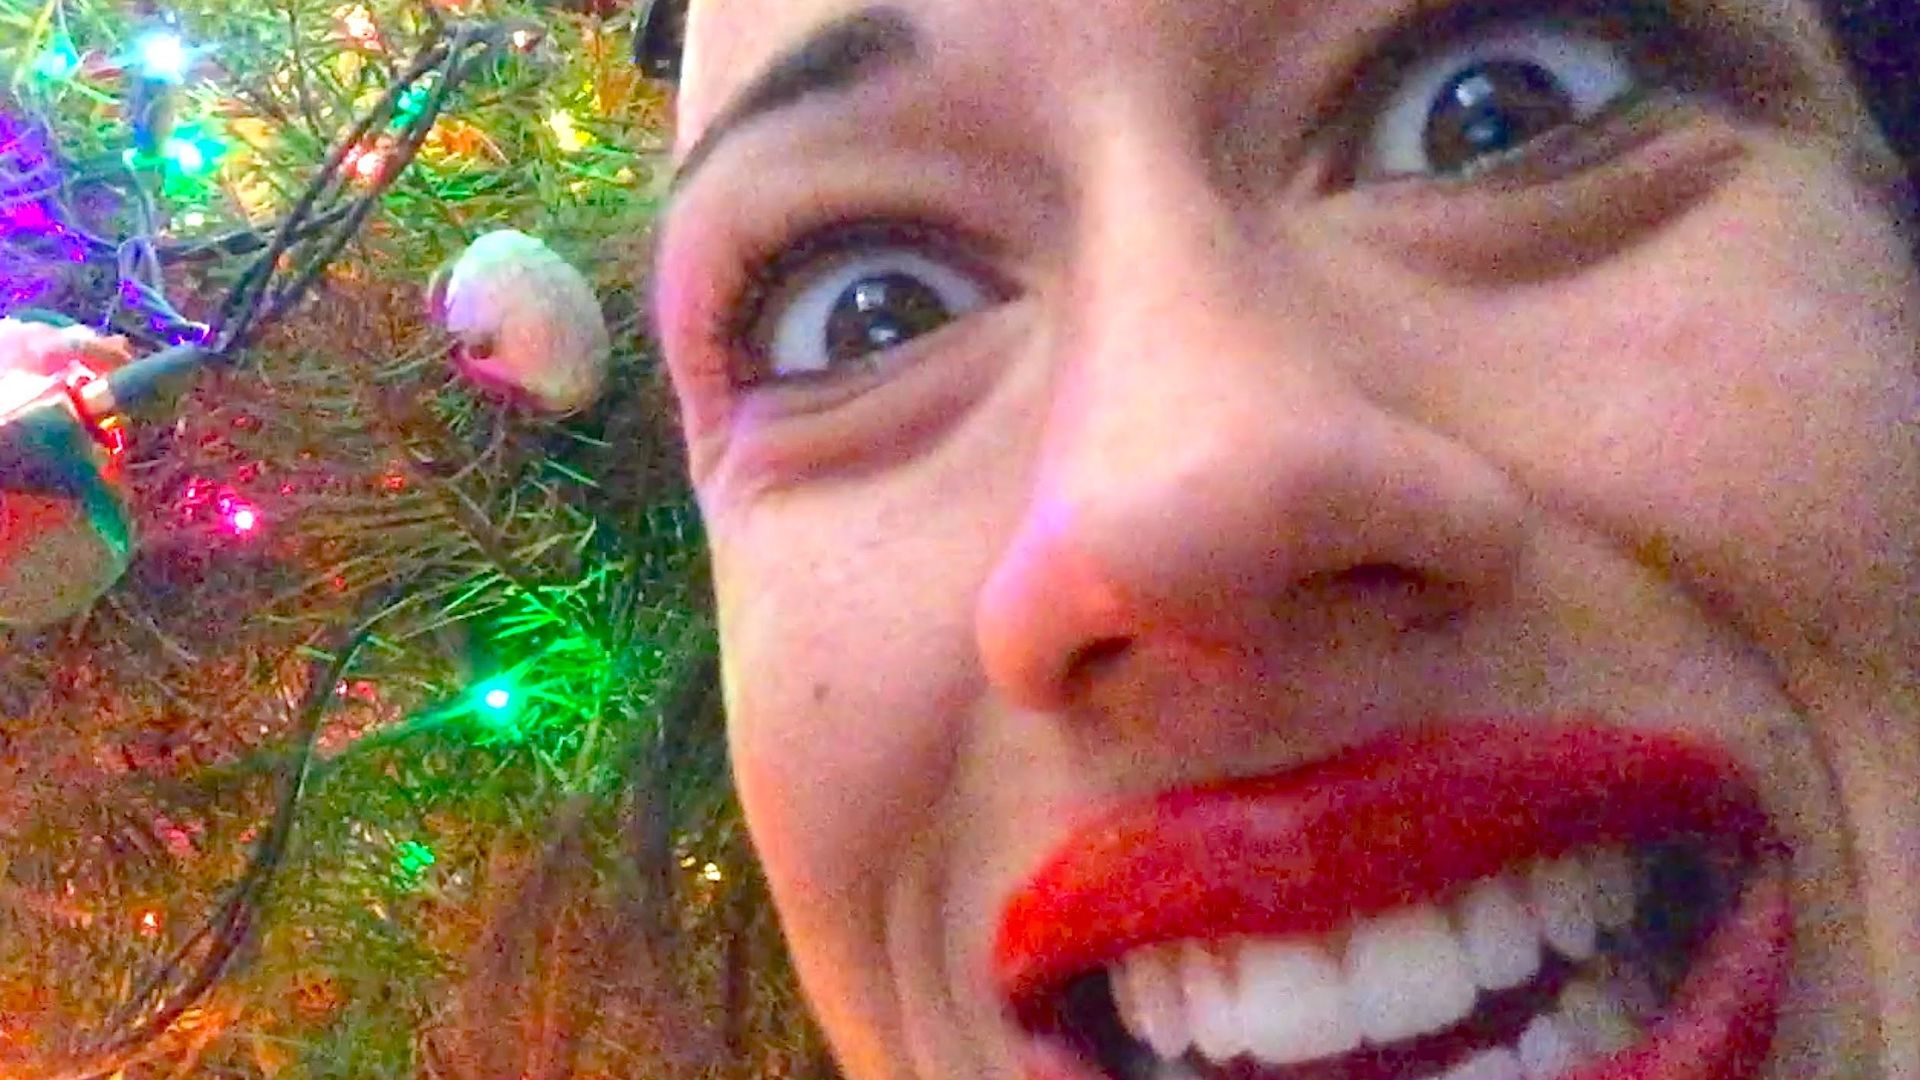 Miranda Sings released a Christmas EP